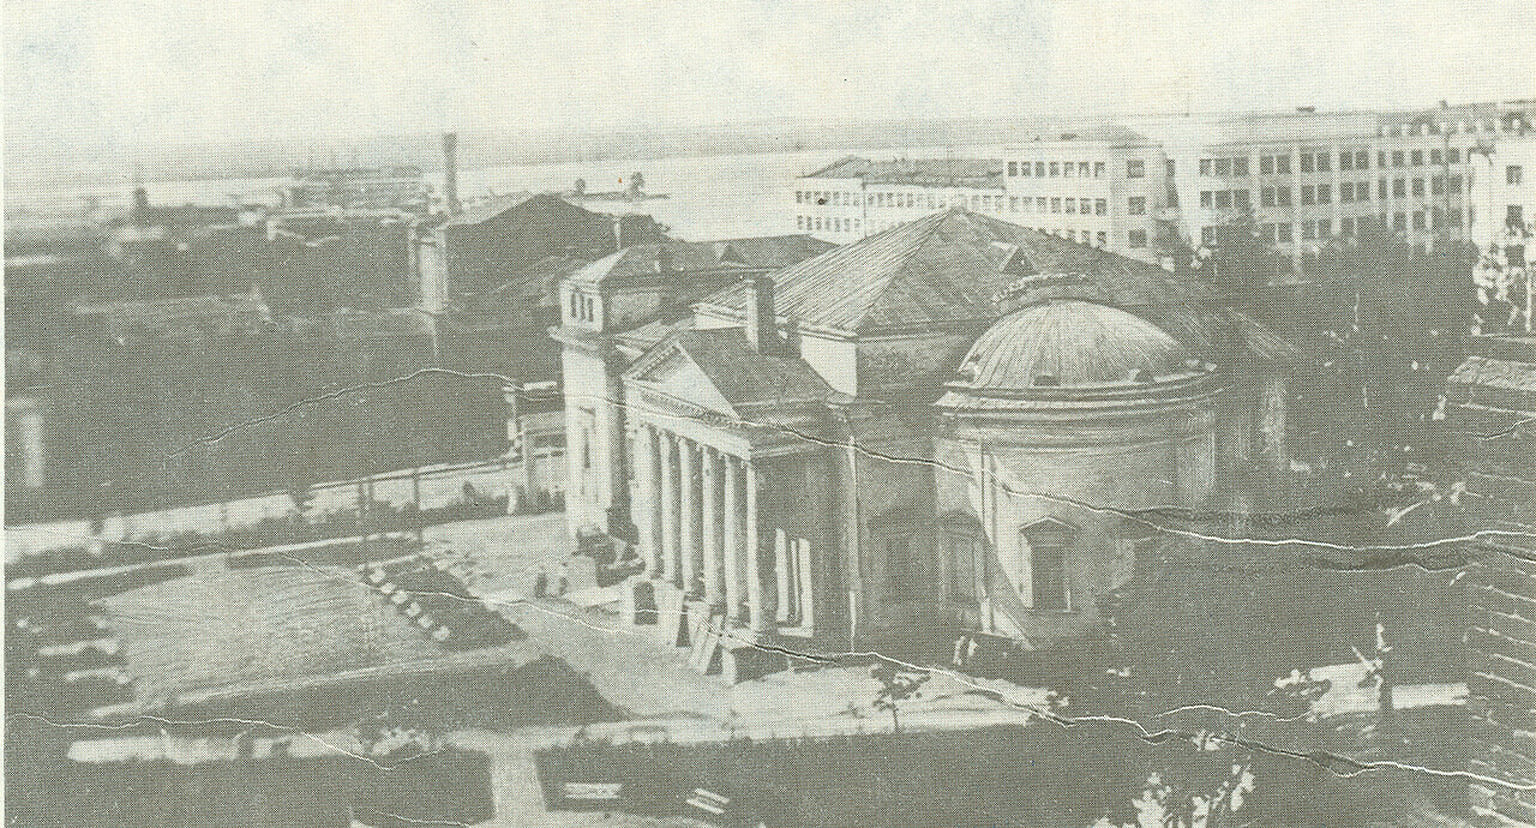 В  марте 1929 года Александро-Невский собор закрыли, а летом из него изъяли все 24 колокола общим весом 650 пудов. Тогда же разрушили колокольню и переоборудовали собор под клуб

